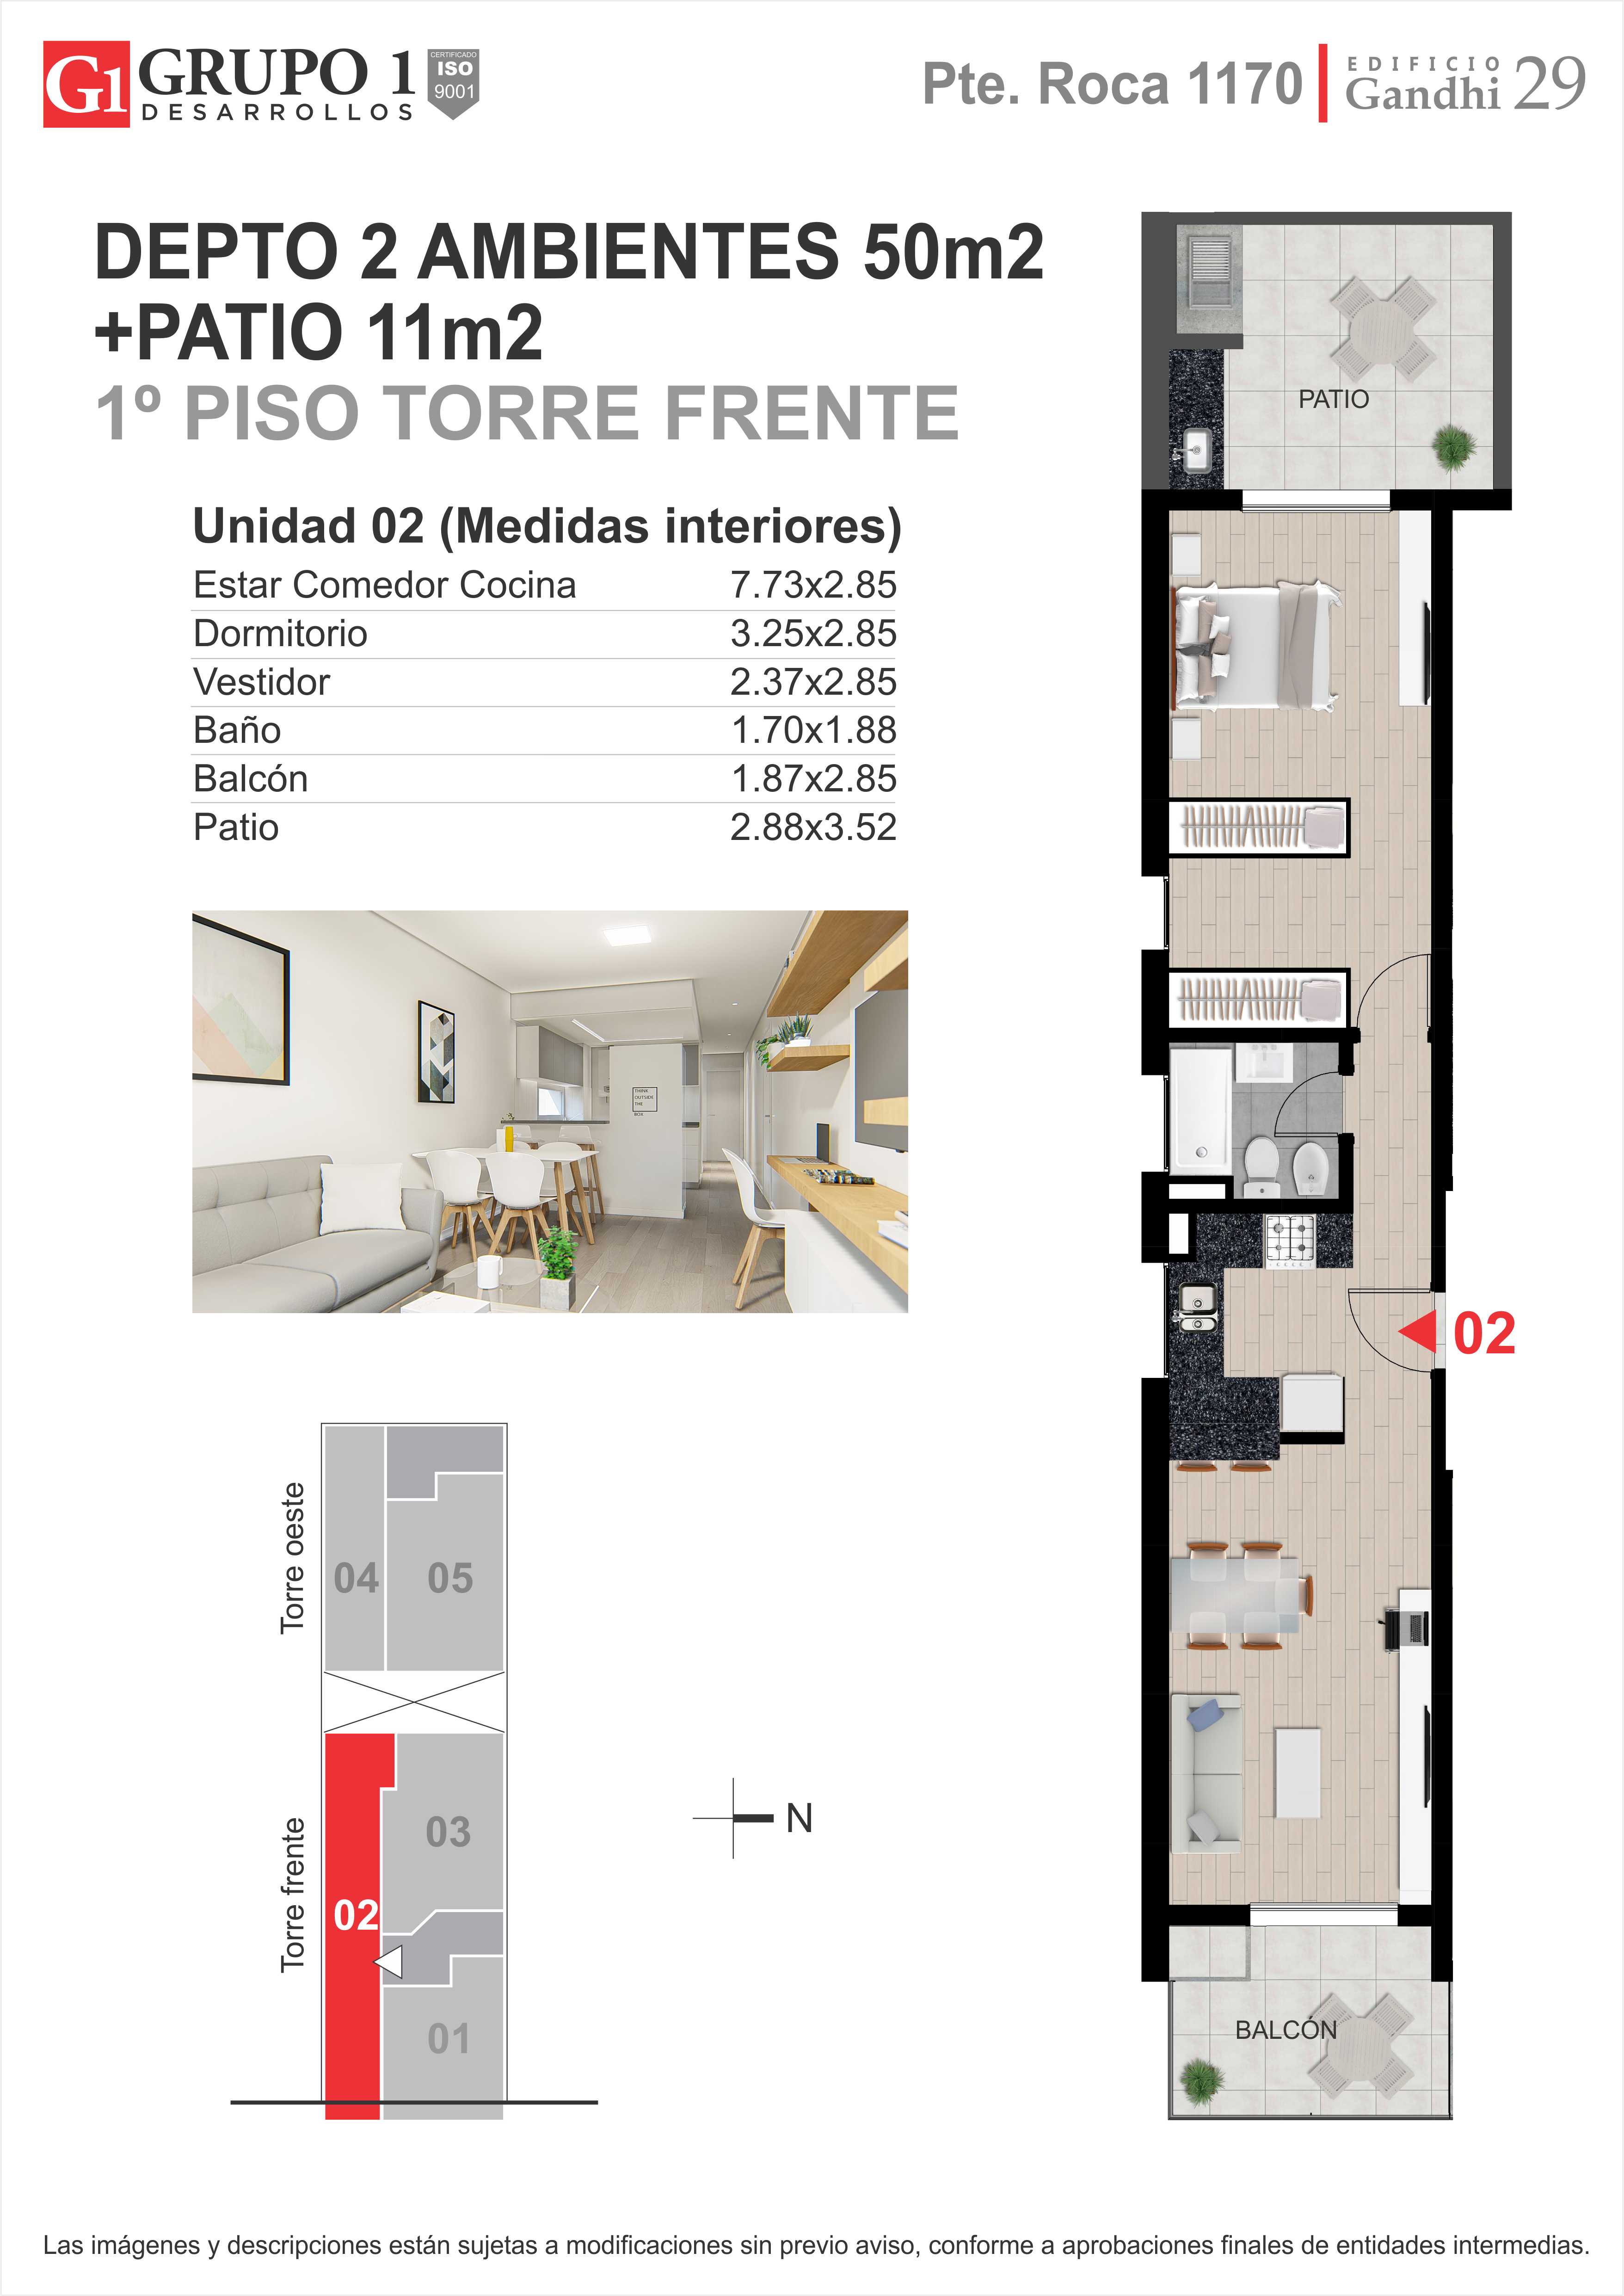 gandhi 29 - departamento 2 ambientes en venta en Rosario, Santa Fe - 